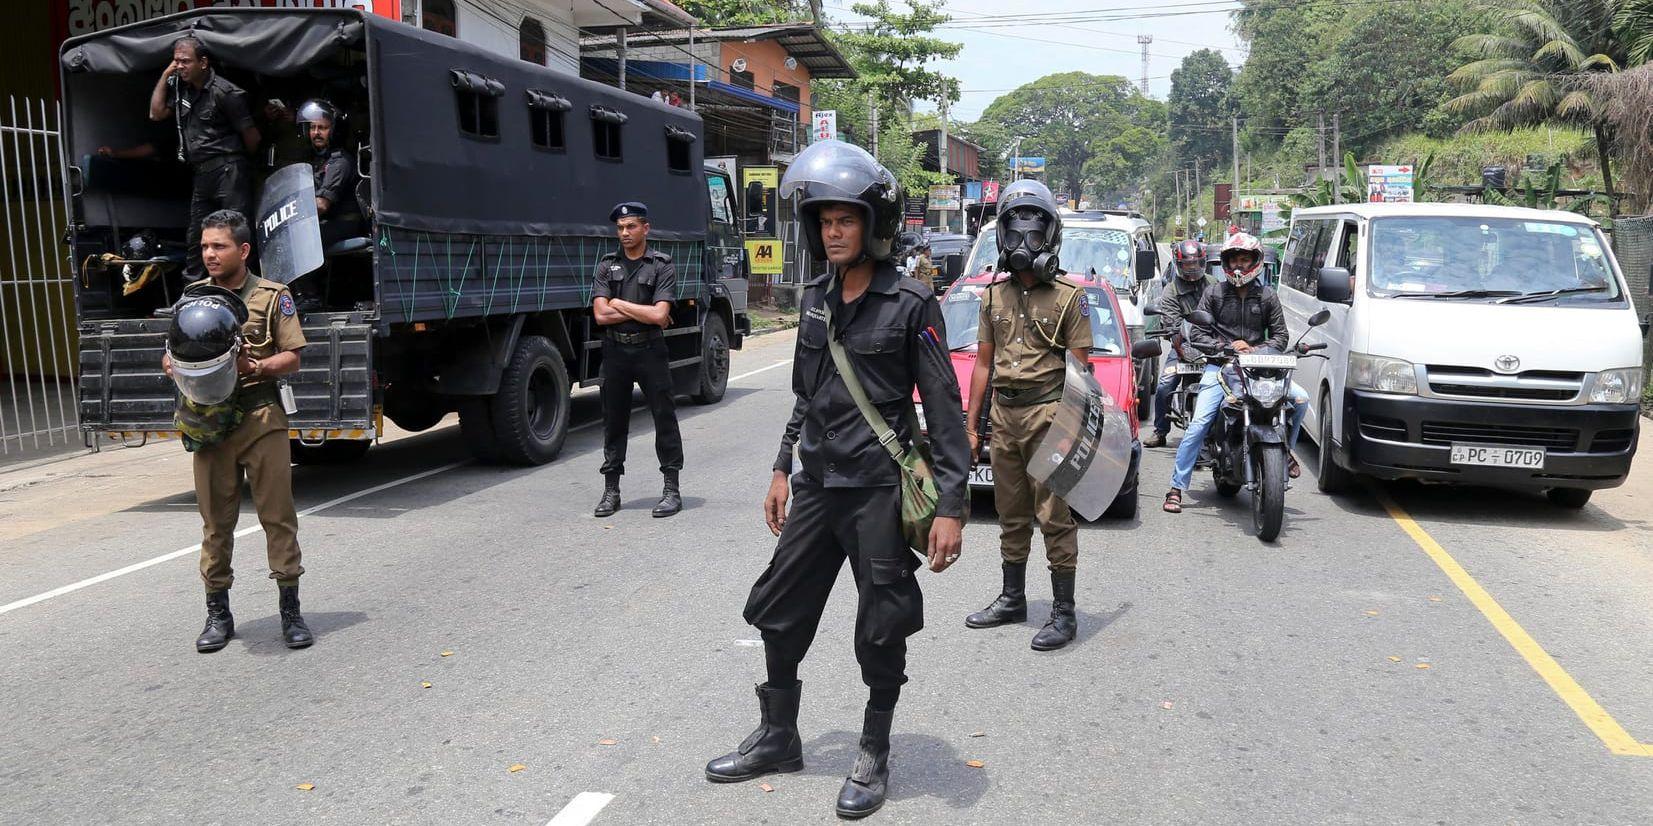 Polis på gatorna i Ambatenna i centrala Sri Lanka i förra veckan.